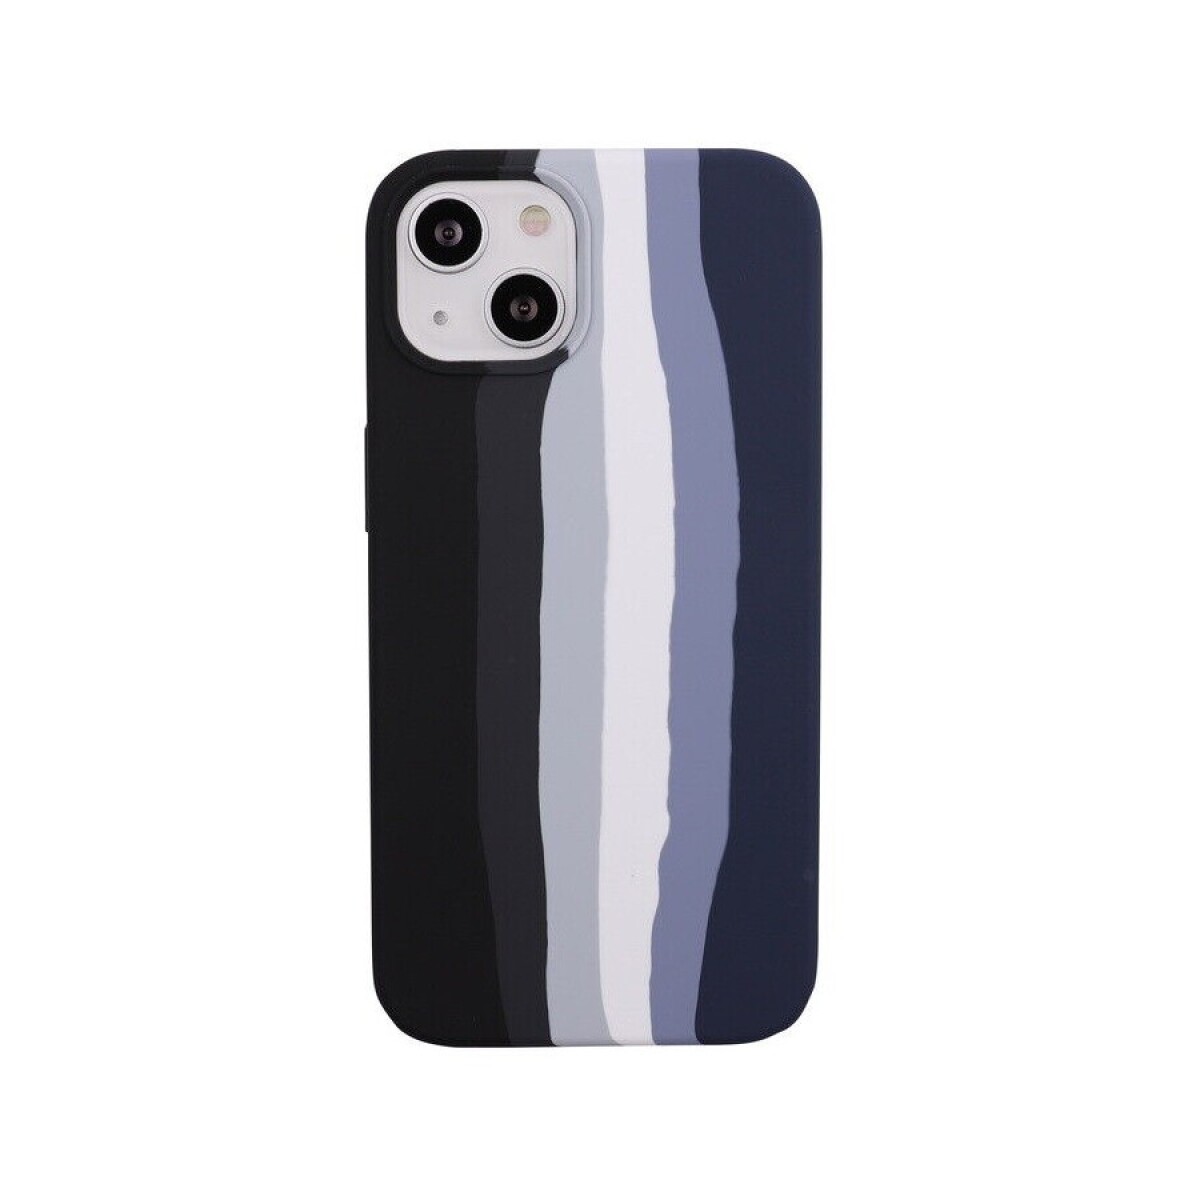 Protector case de silicona iphone 14 pro max diseño arcoiris - Negro 